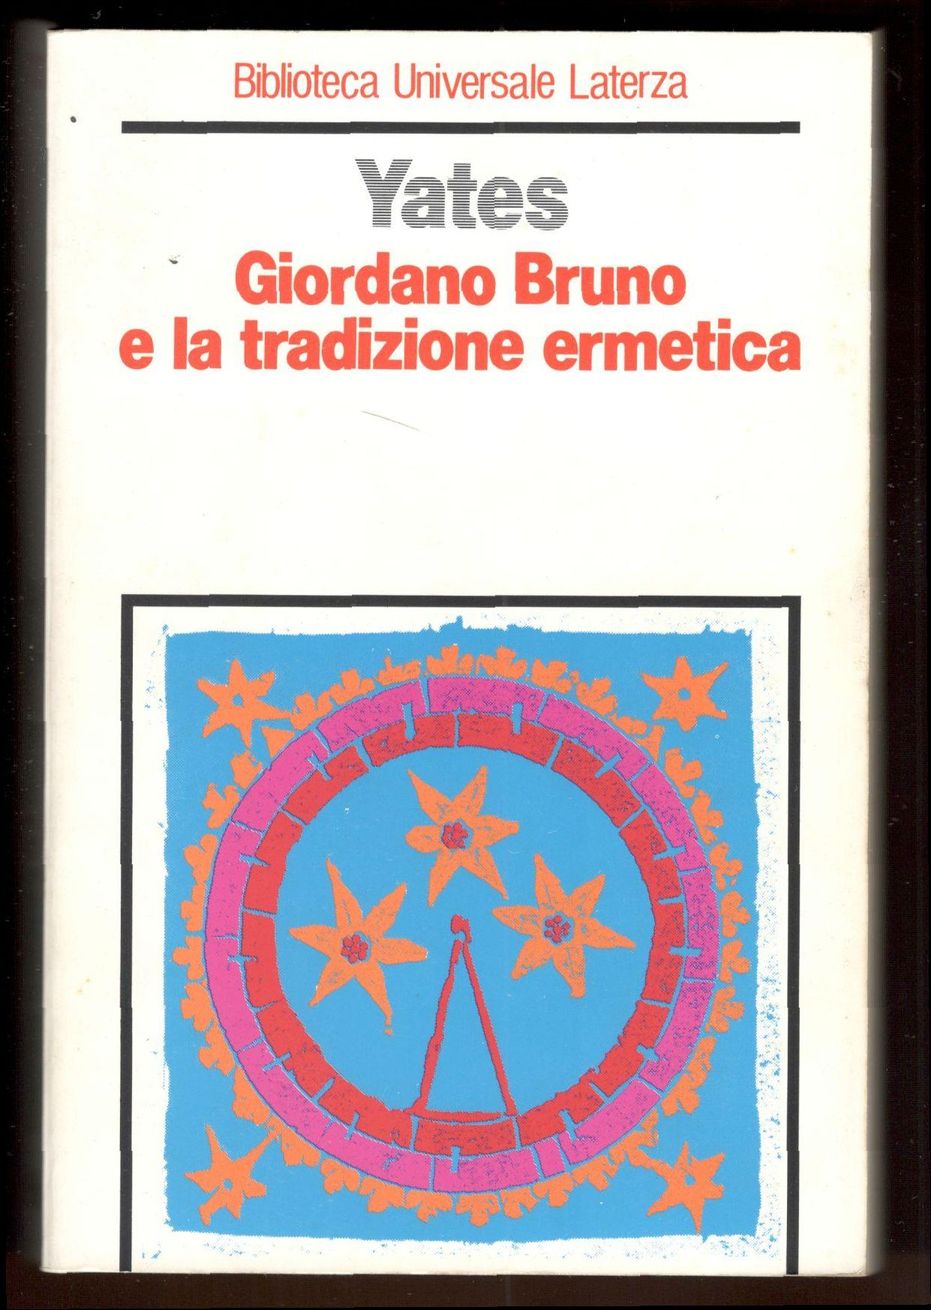 Giordano Bruno e la tradizione ermetica - YATES, Frances A.